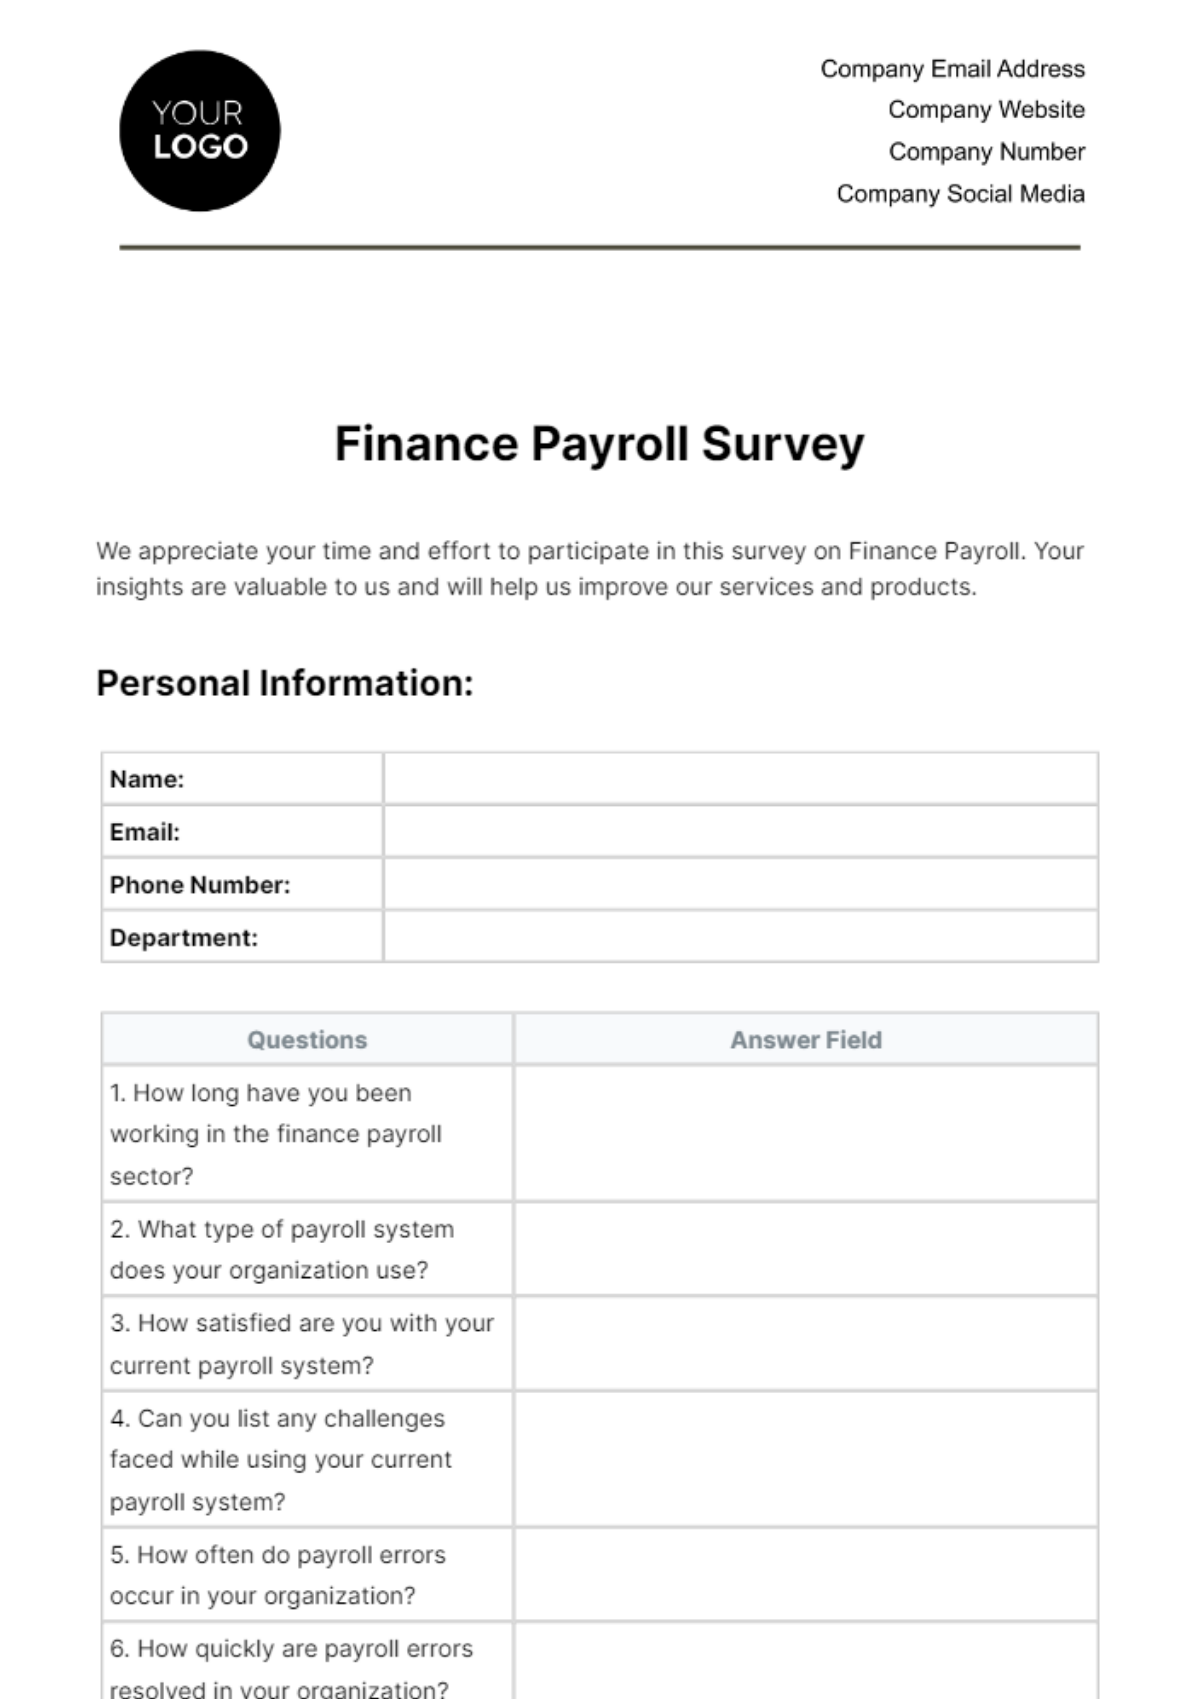 Finance Payroll Survey Template